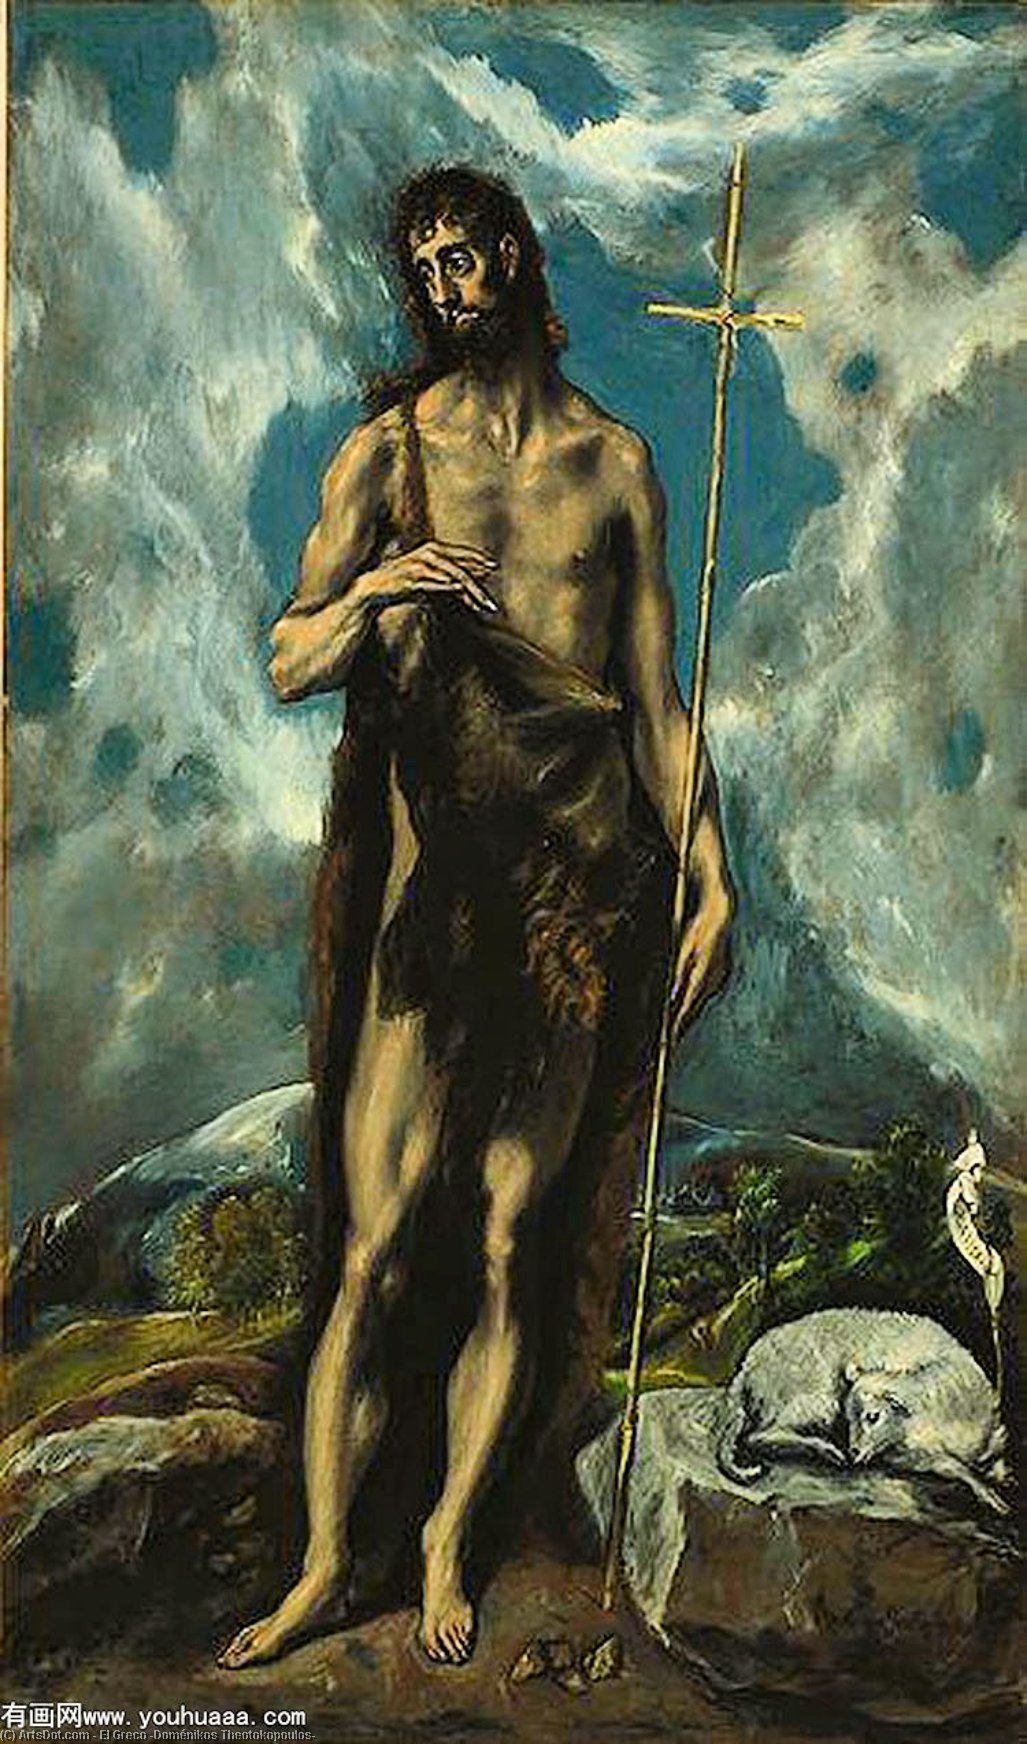 WikiOO.org - Encyclopedia of Fine Arts - Maalaus, taideteos El Greco (Doménikos Theotokopoulos) - baptis